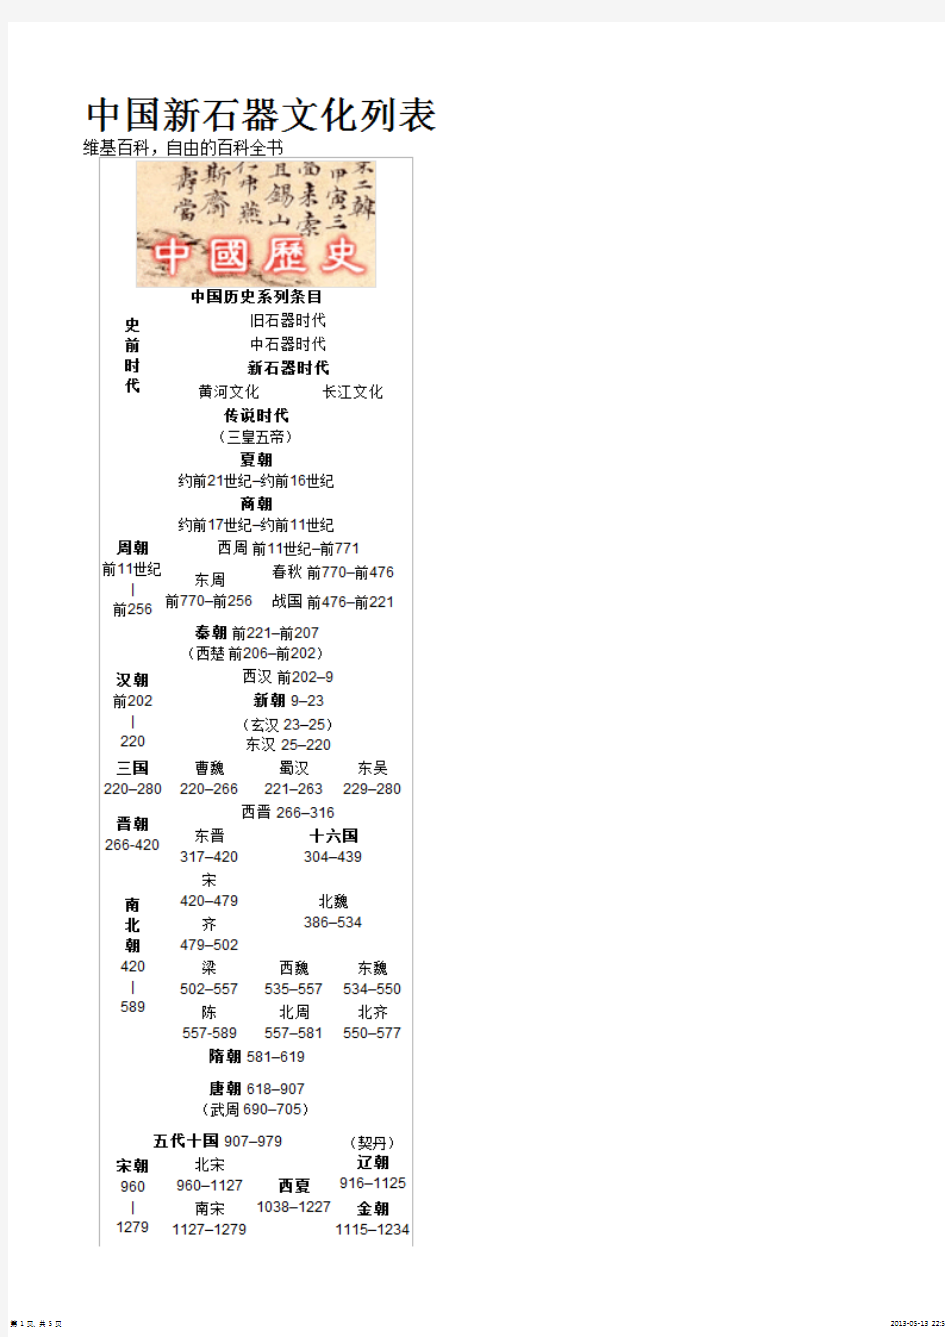 中国新石器文化列表